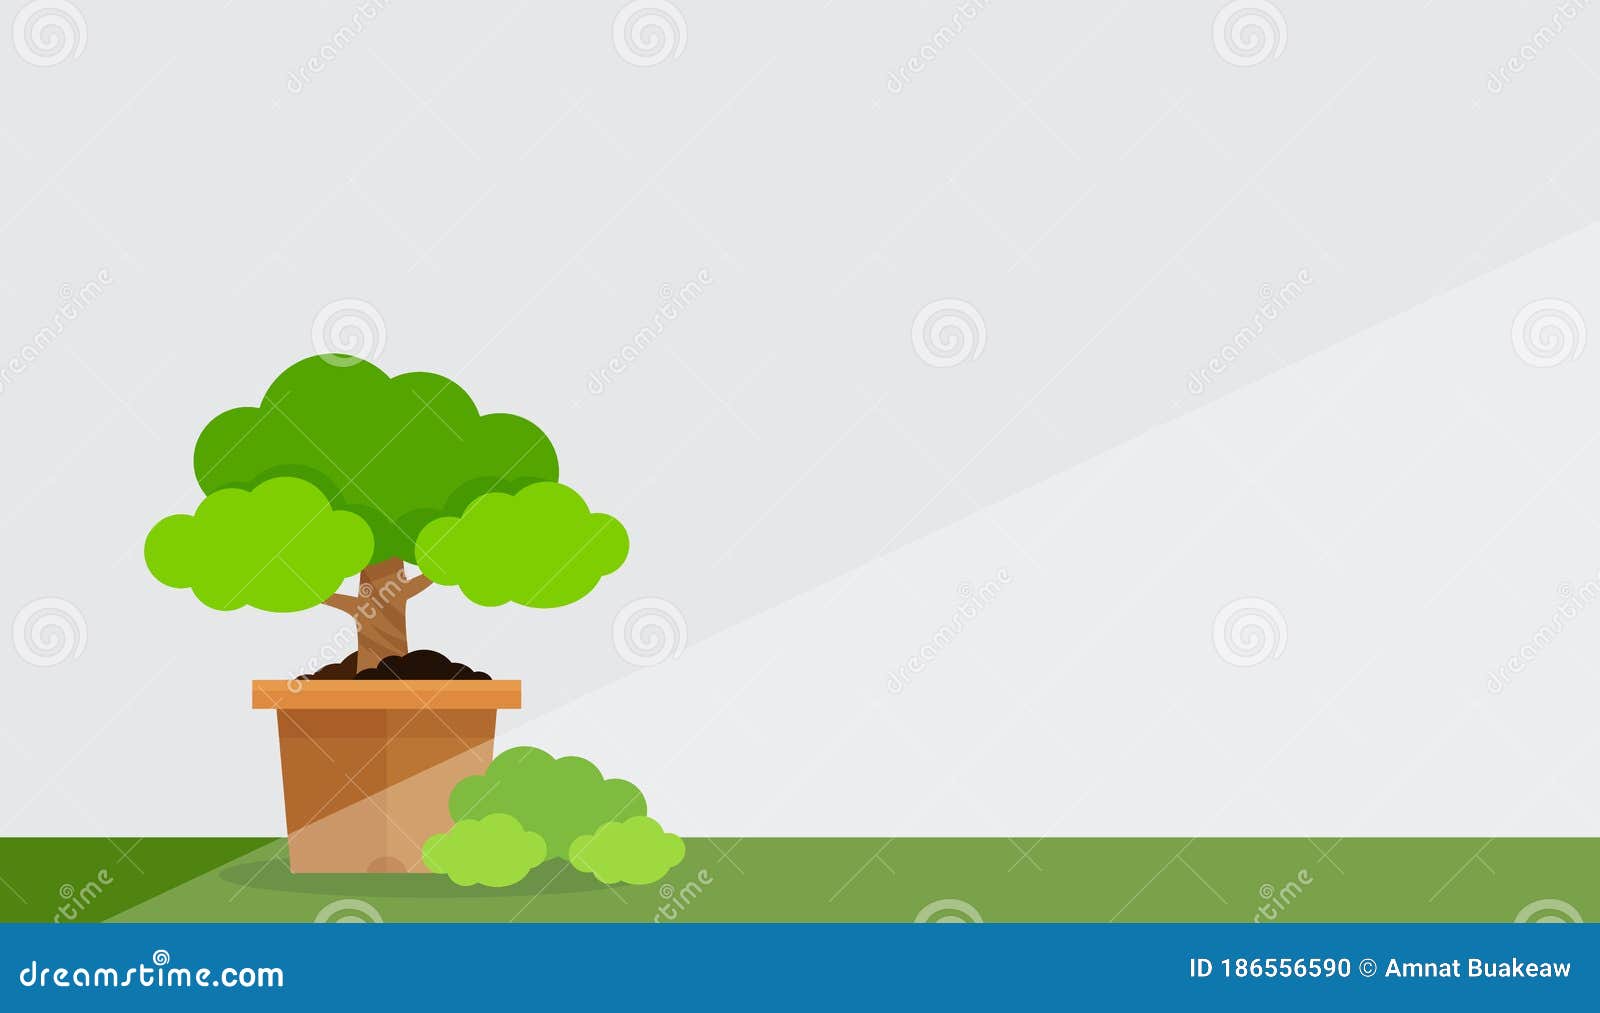 Olla De árbol Pequeña Con Fondo De Pared Gris Blanco Y árbol De Maceta De  Espacio Para El Dibujo De Clip árbol De La Olla En La Pa Ilustración del  Vector -